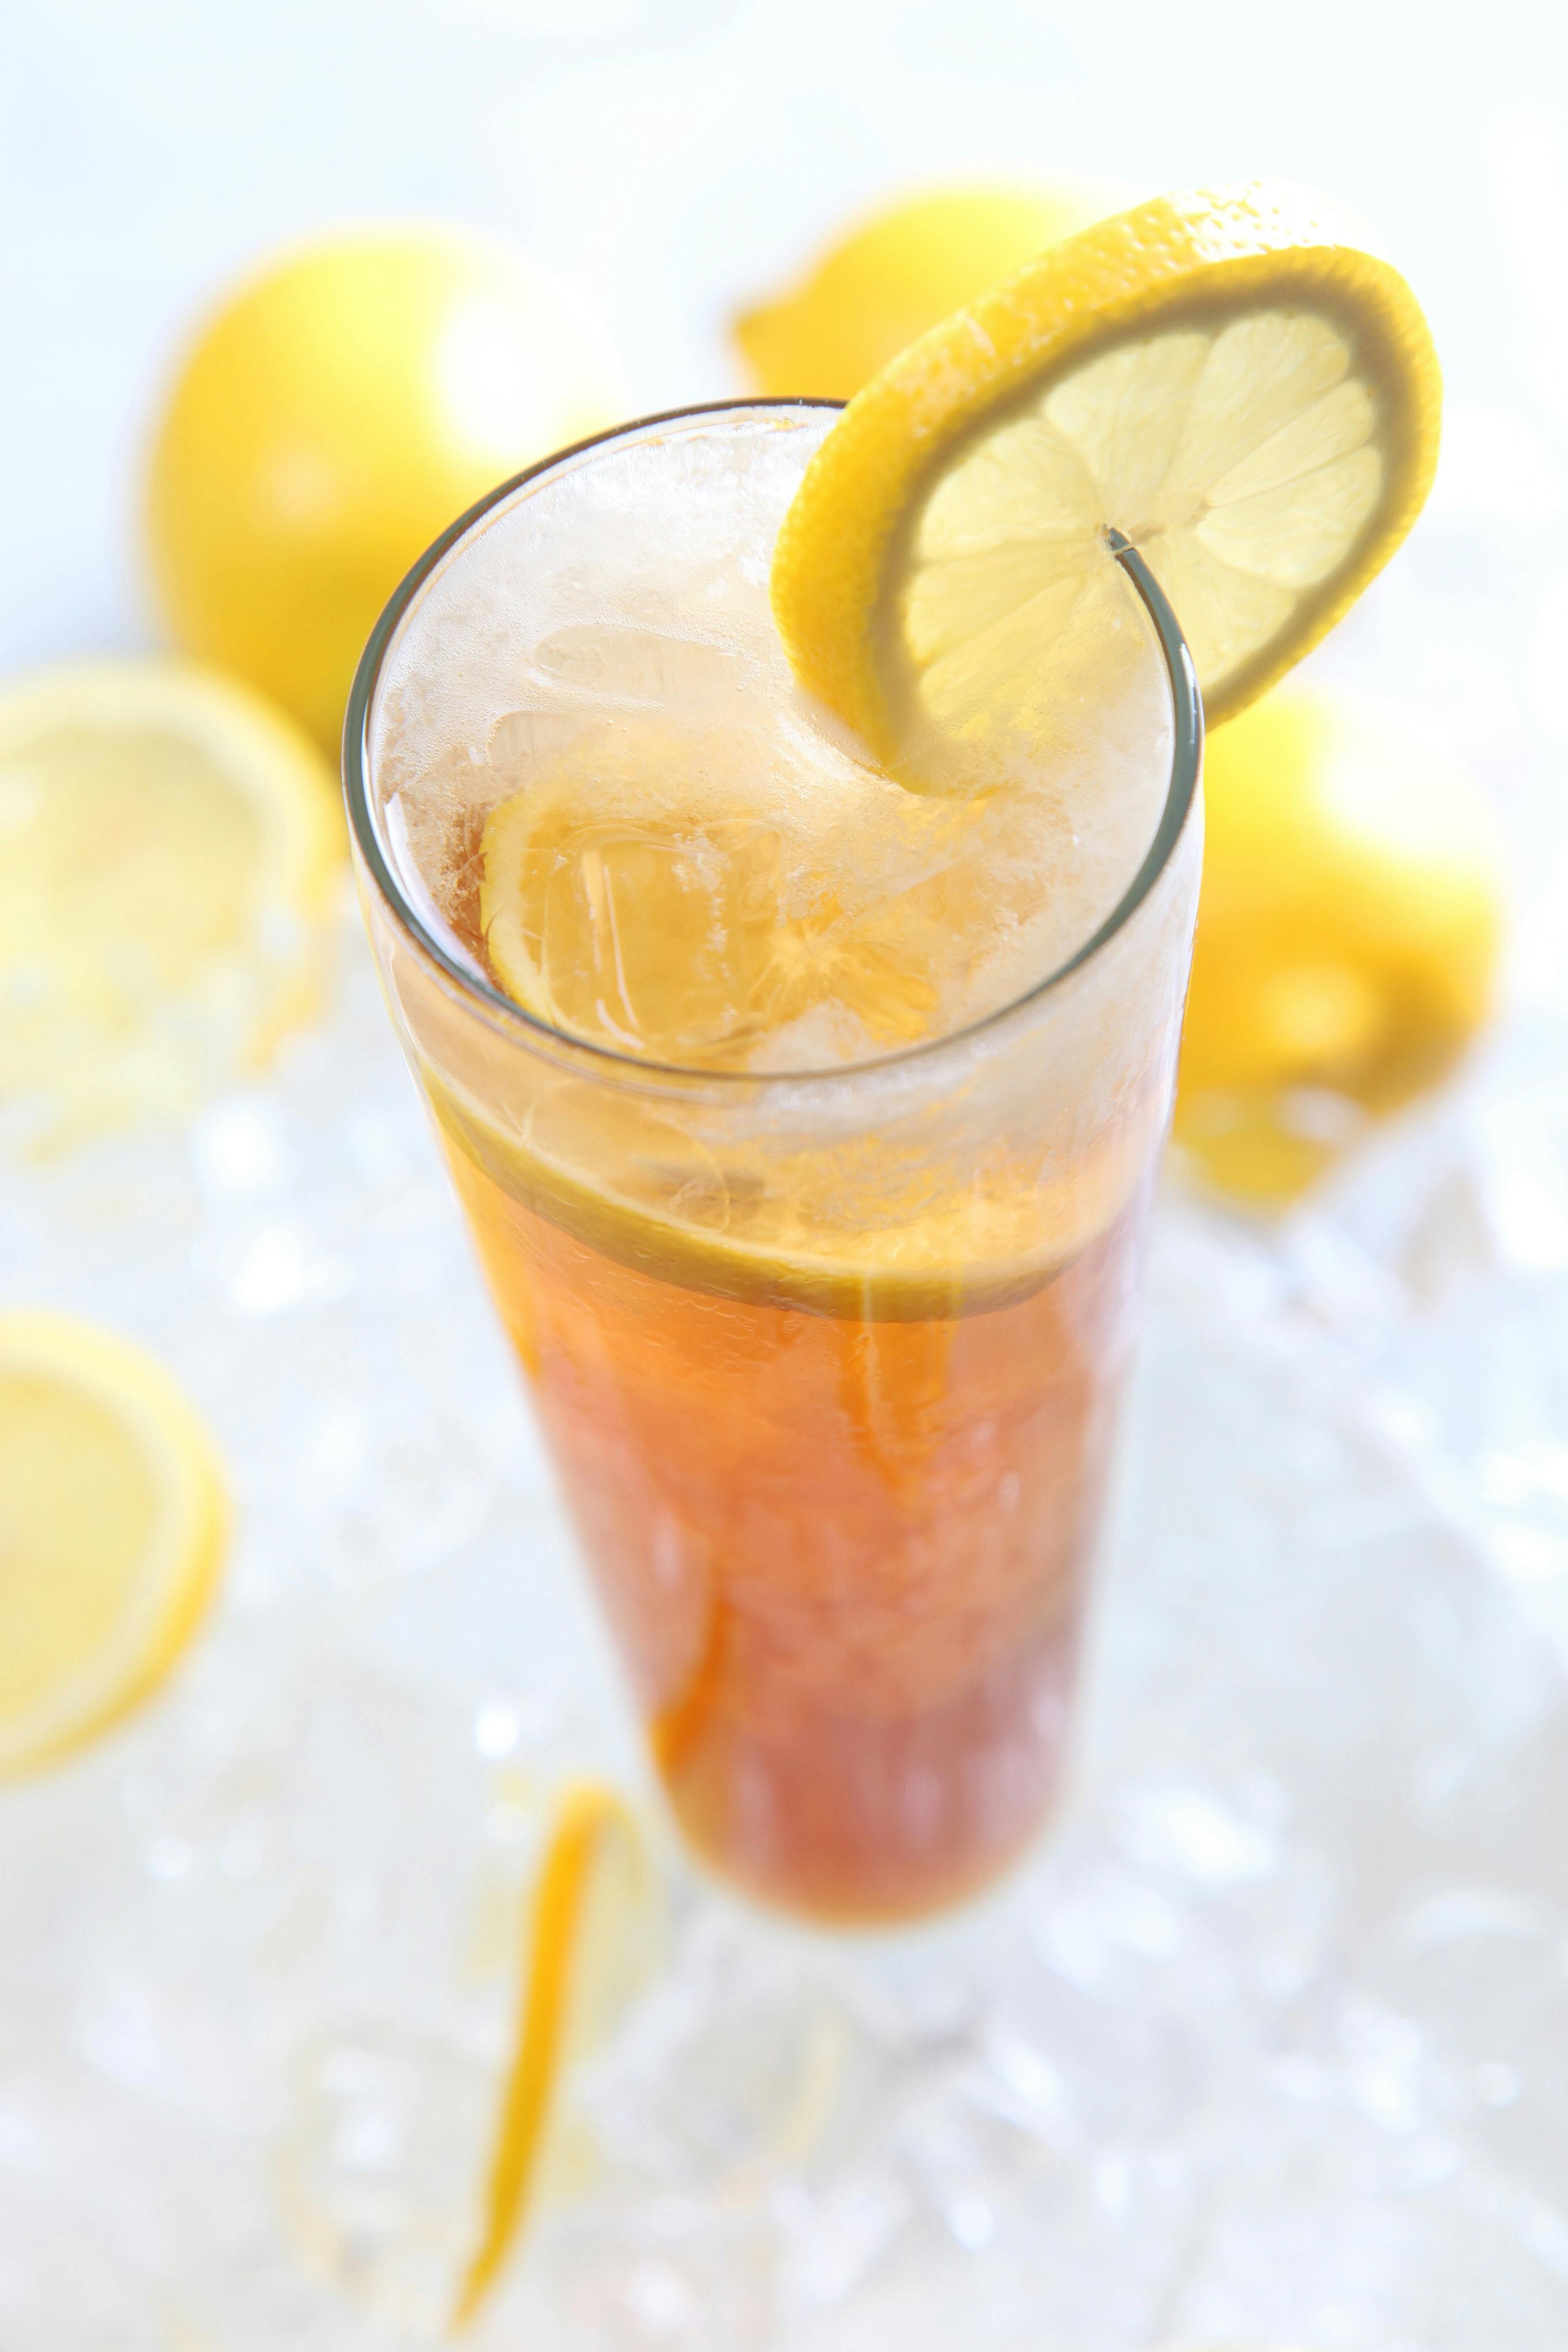 https://images.pexels.com/photos/40594/lemon-tea-cold-beverages-summer-offerings-40594.jpeg?cs=srgb&dl=pexels-pixabay-40594.jpg&fm=jpg